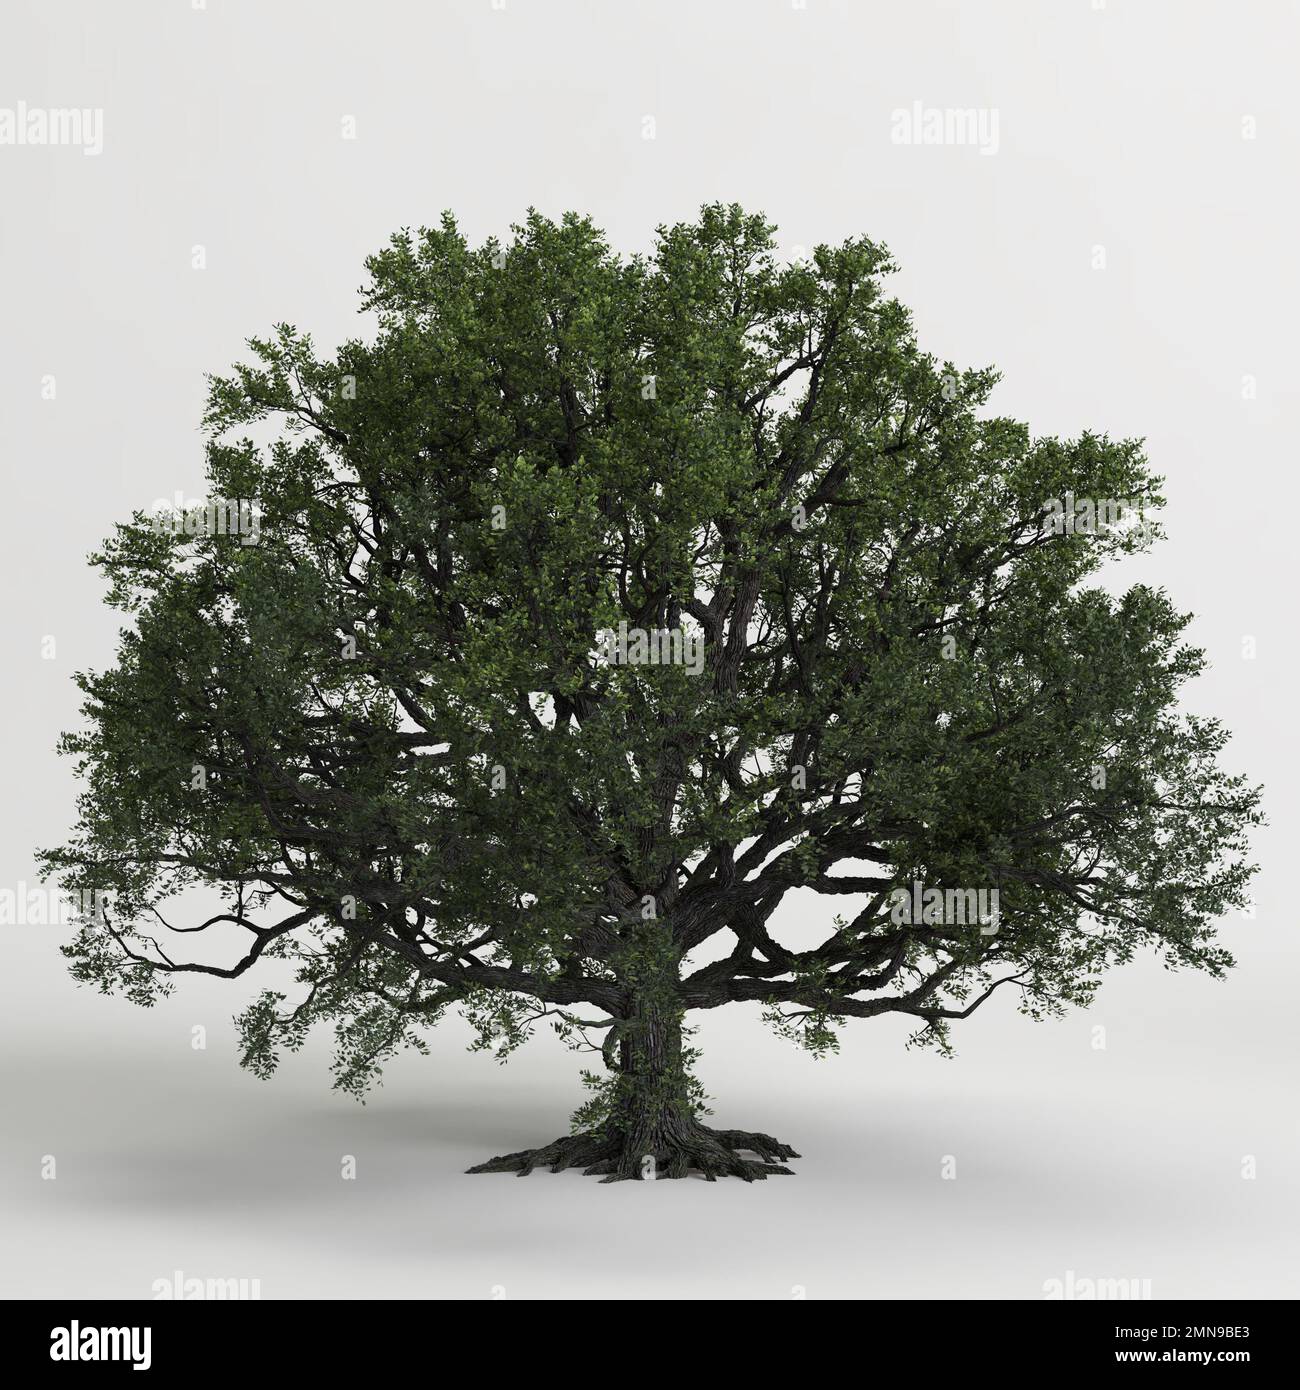 3d illustration of oak tree isolated on white background Stock Photo